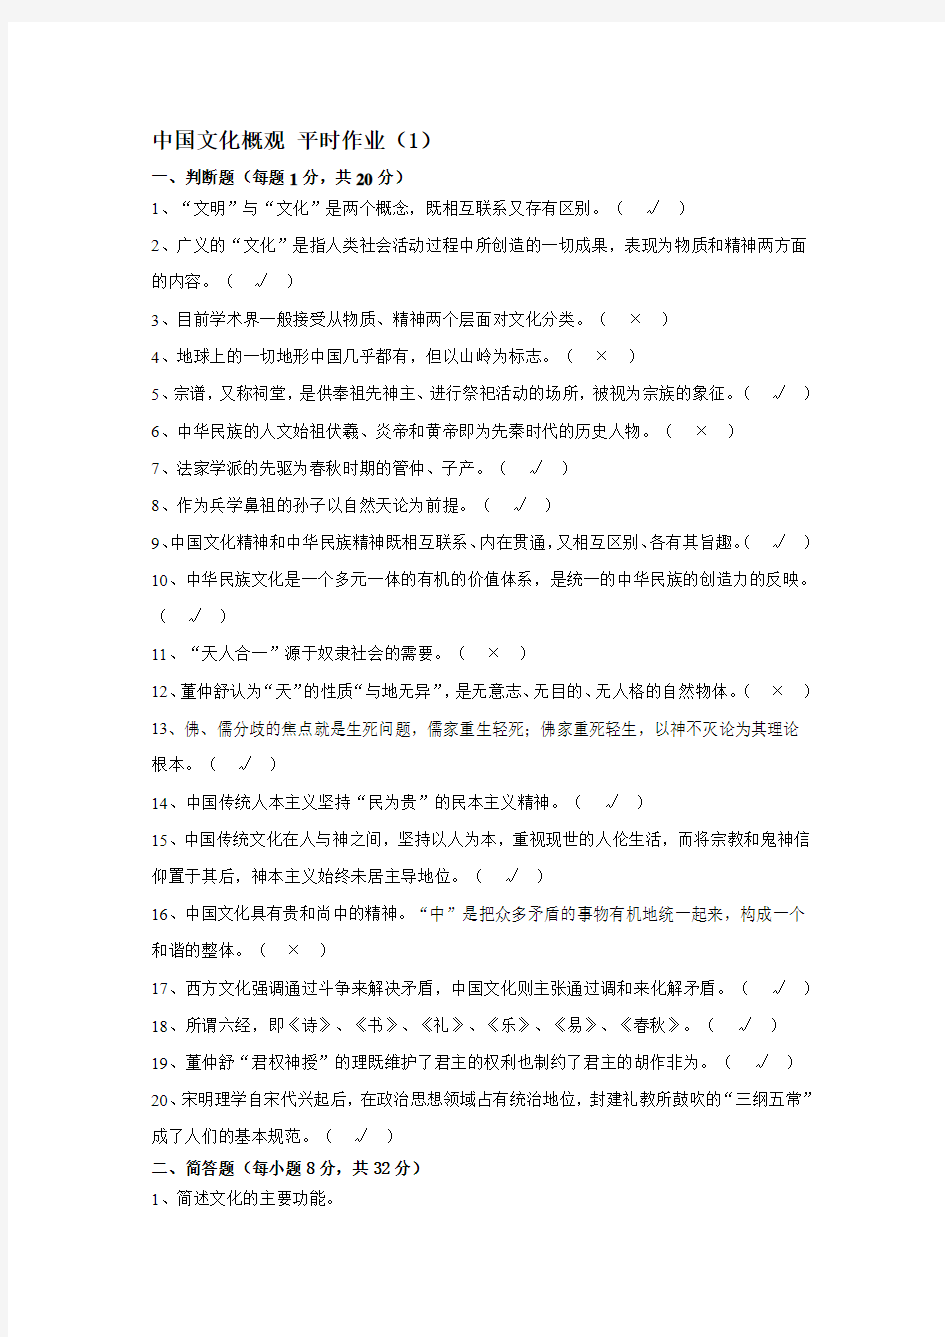 2010重庆电大秋季学期中国文化概观平时作业(1-4)含答案